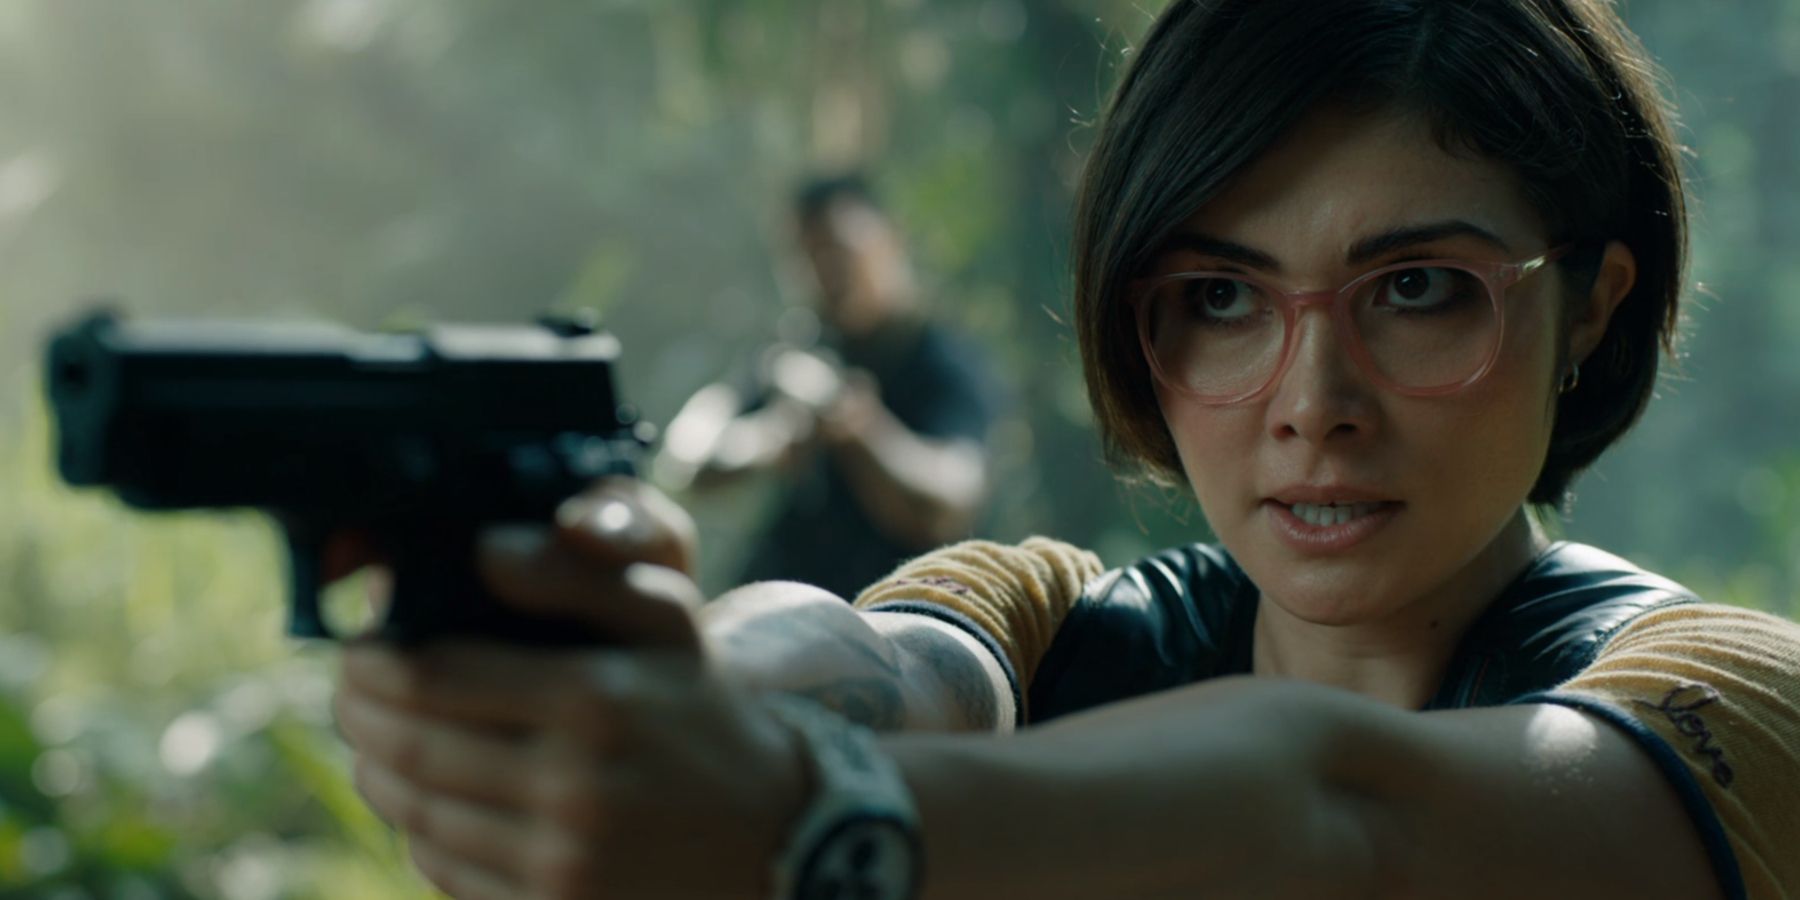 Zia Rodriguez aiming a pistol as Ken Wheatley in Jurassic World Fallen Kingdom